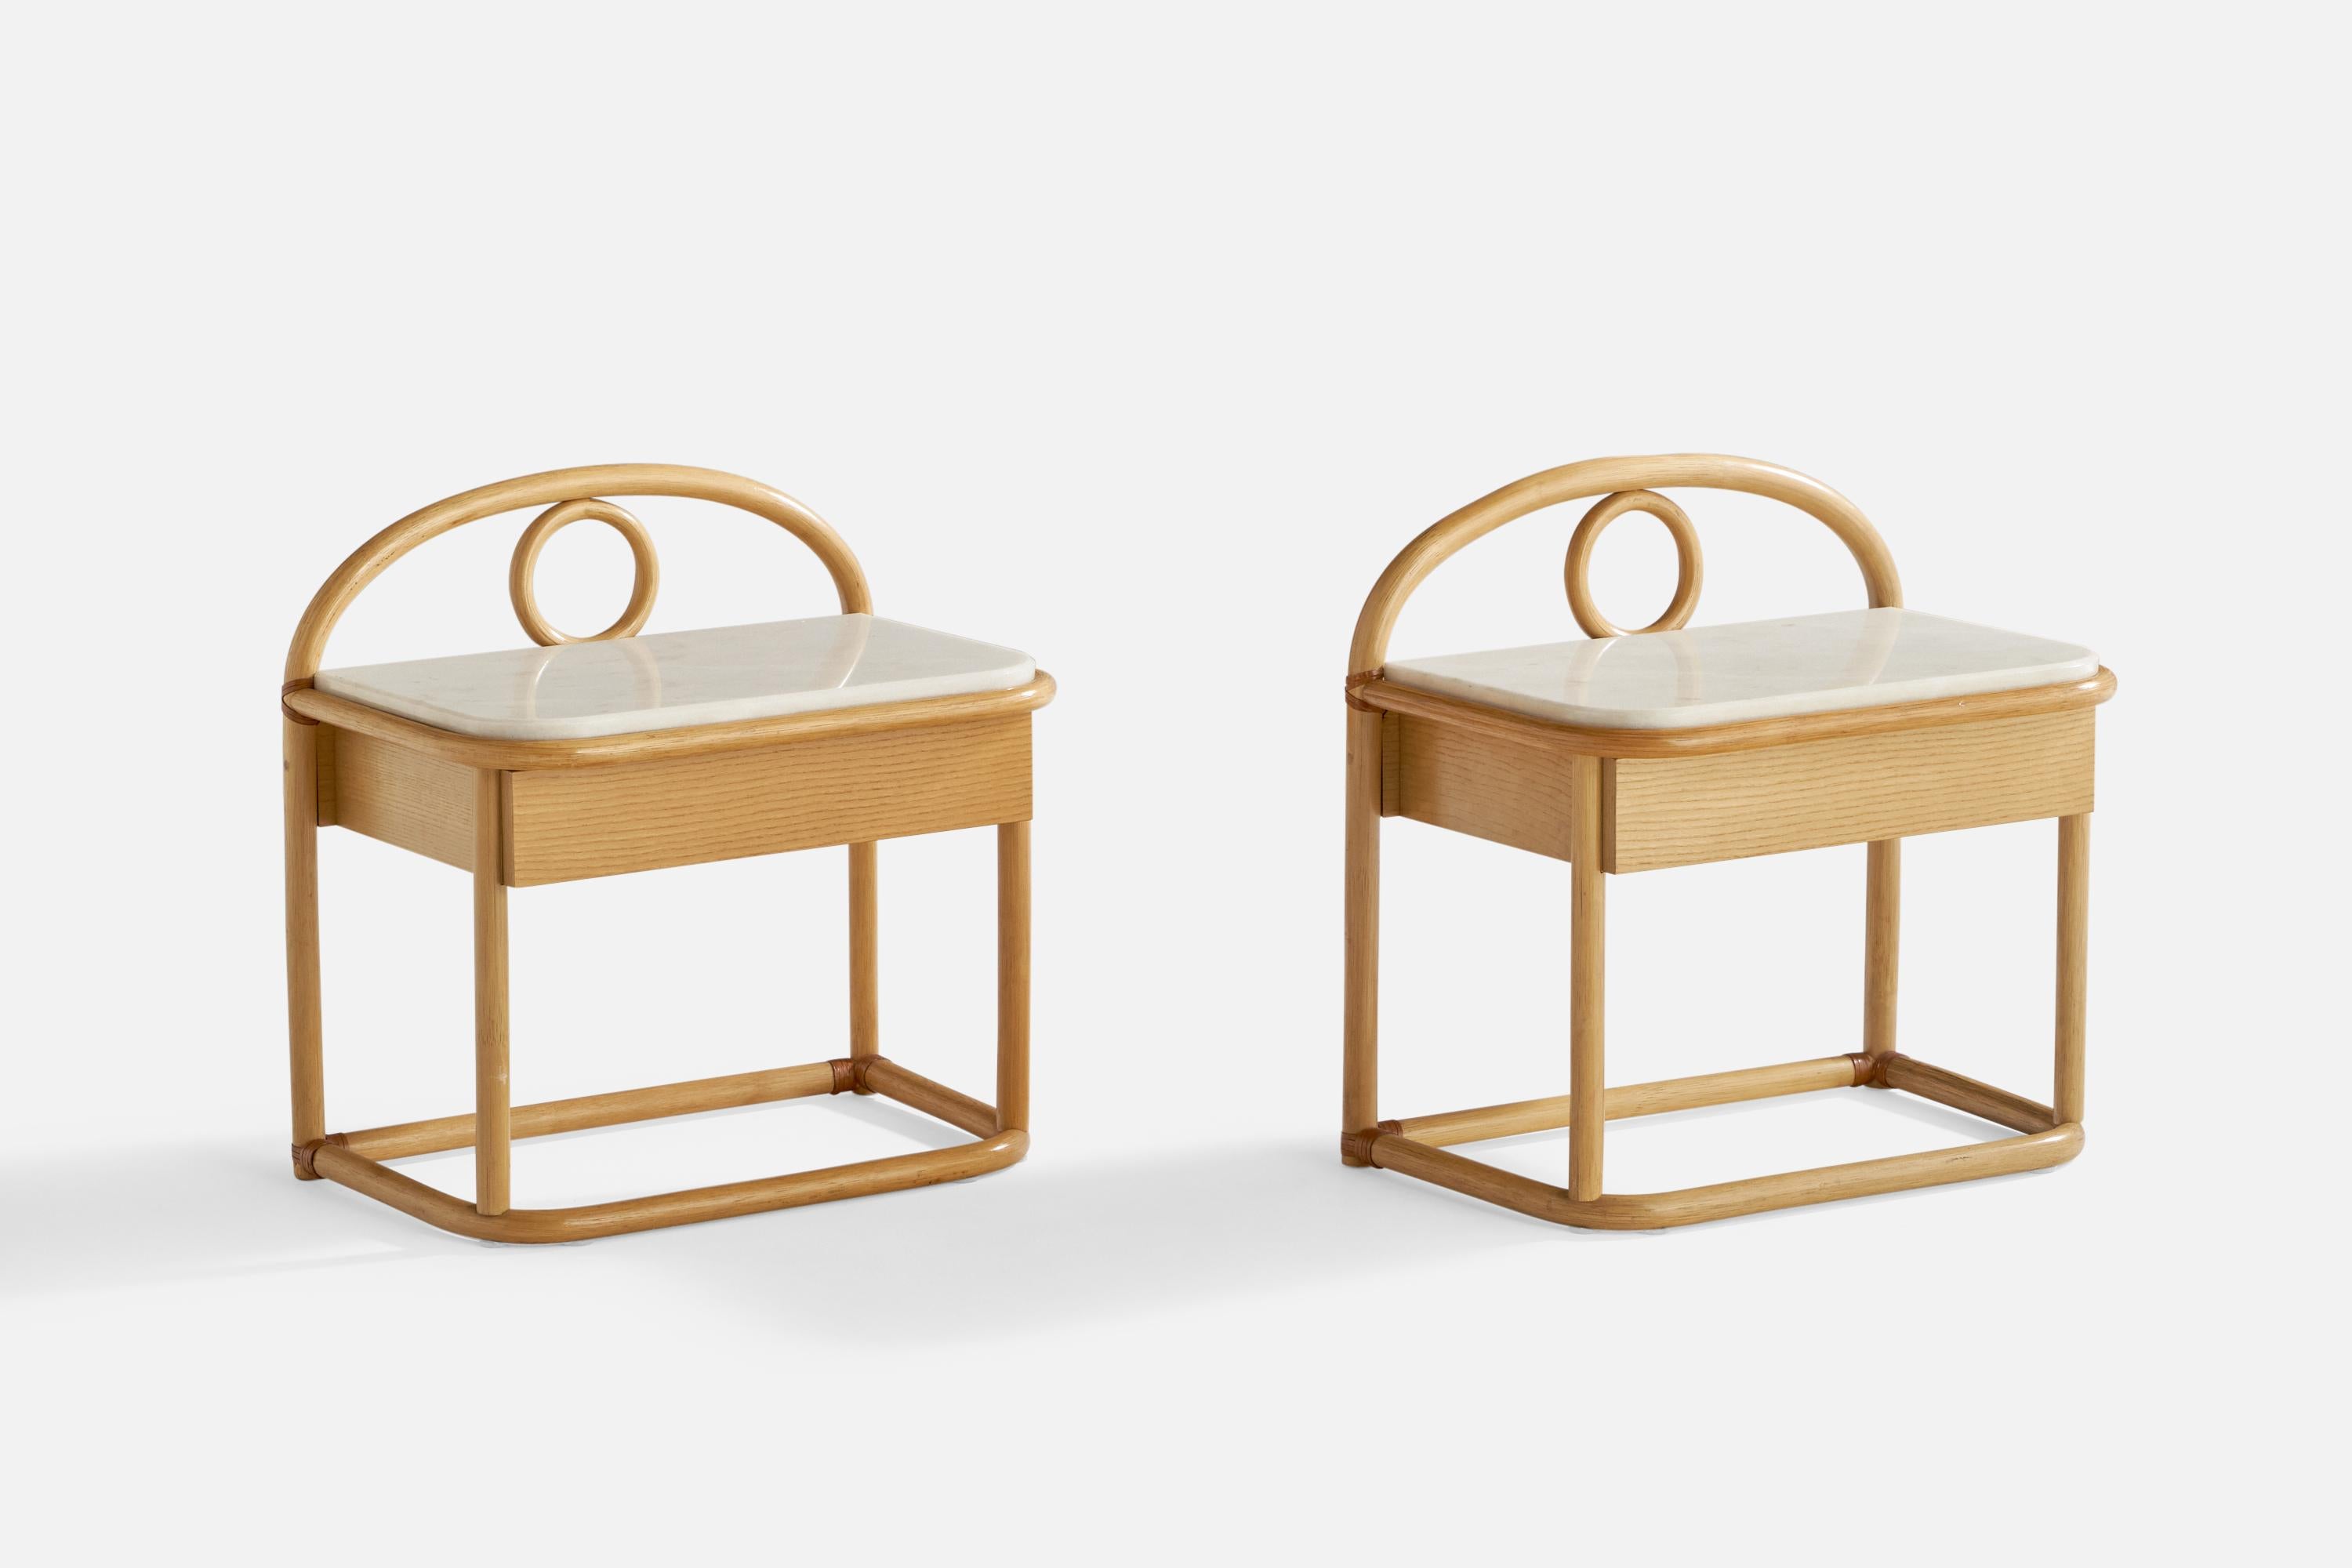 Paire de tables de nuit ou de chevets en bois courbé, cuir, chêne et marbre, conçue et produite par Gervasoni, Italie, années 1970.

La marque du fabricant est apposée à l'arrière de chaque table de nuit.

